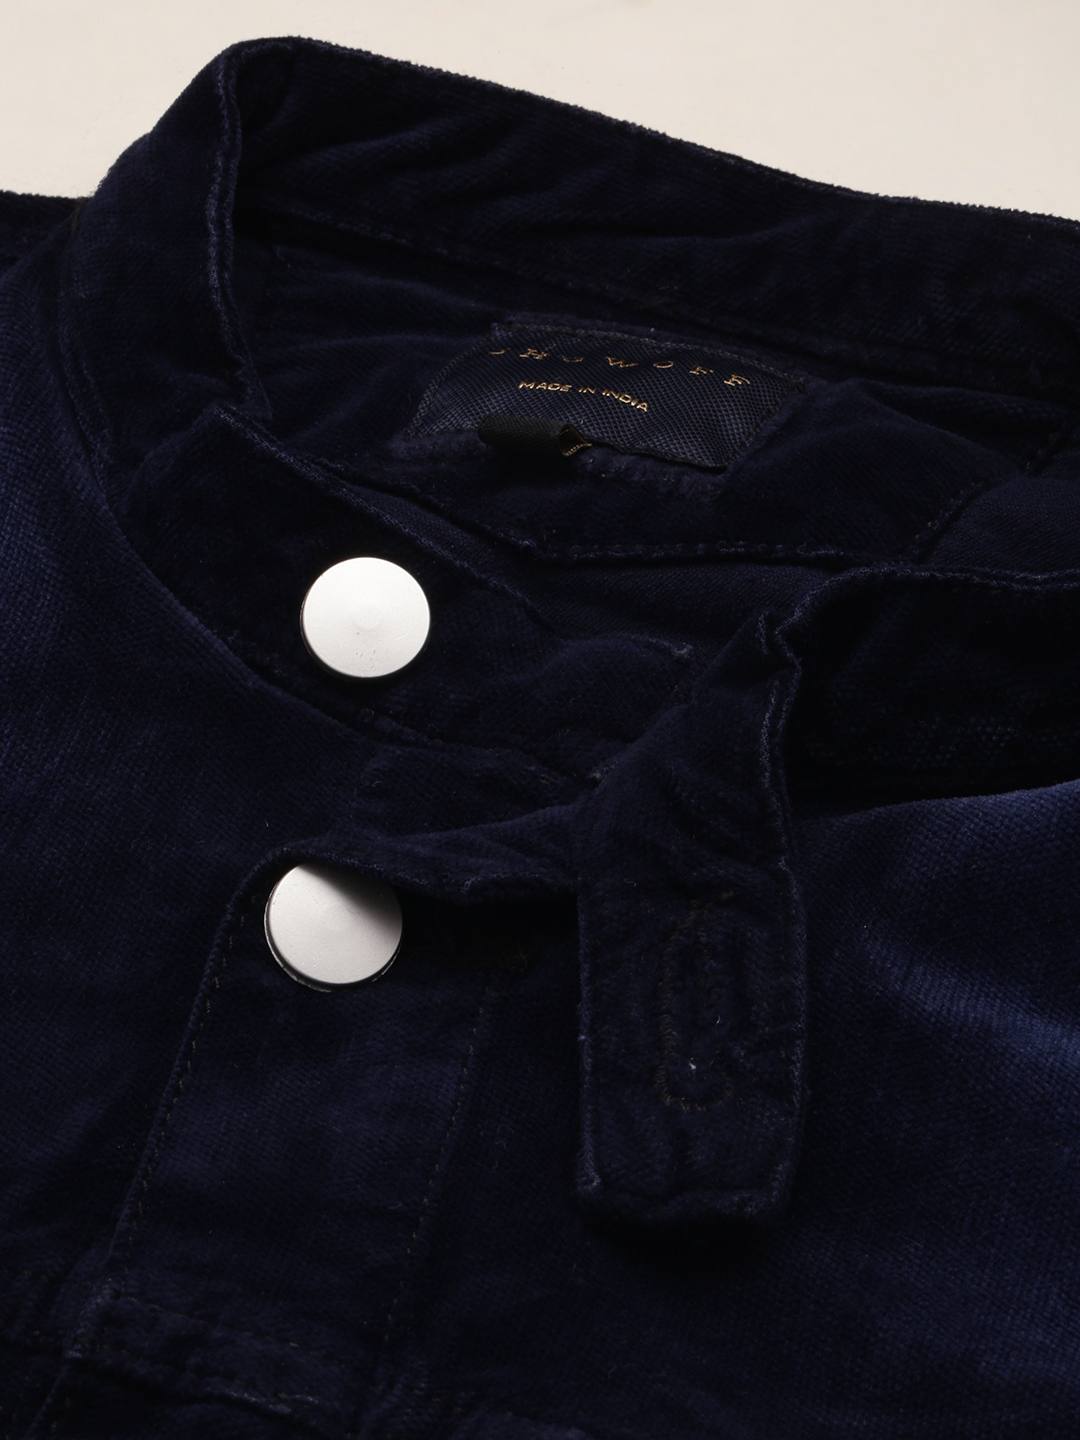 Showoff | SHOWOFF Men's Mandarin Collar Solid Navy Blue Open Front Jacket 5